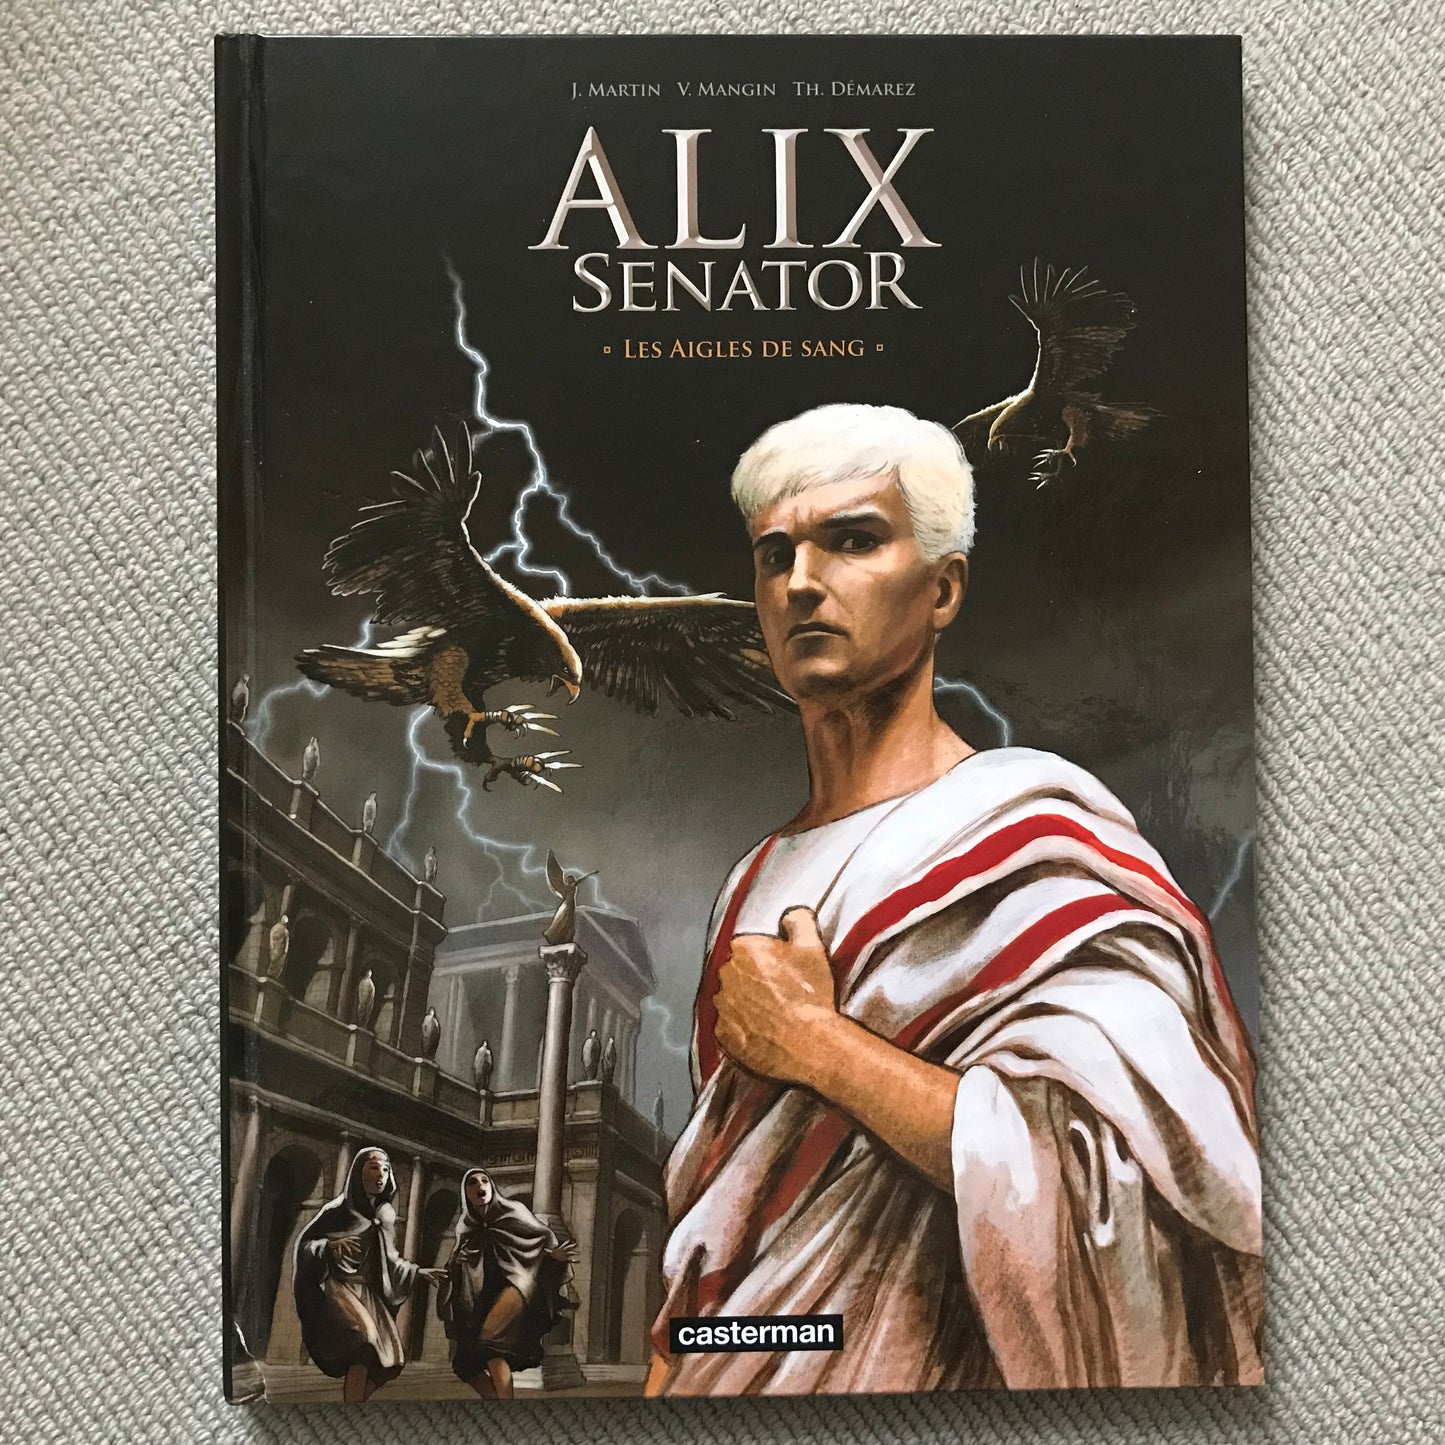 Alix Senator T1: Les aigles de sang - Martin, J., Mangin, V. & Démarez, T.